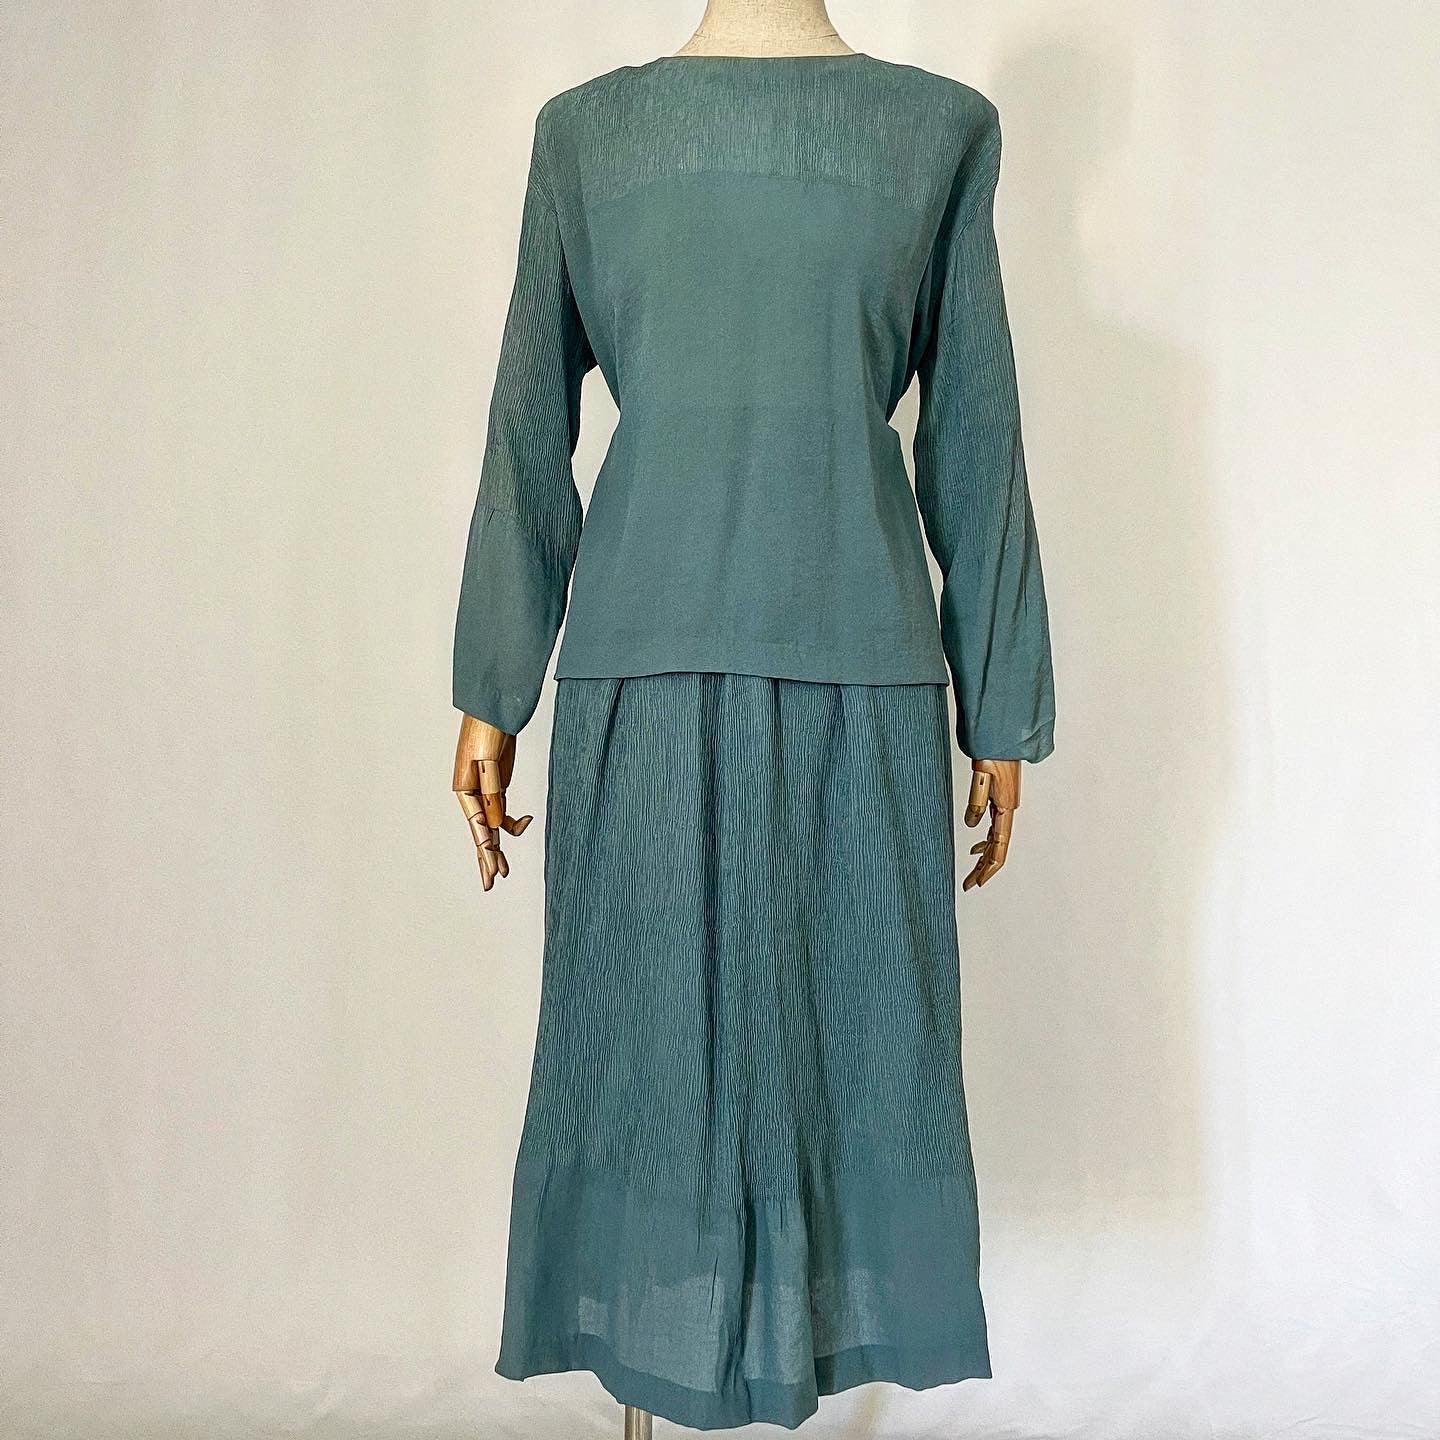 KEIKO KISHI BY NOSH - KEIKO KISHI BY NOSH Set: Blouse + Double Skirt - AVVIIVVA.COM